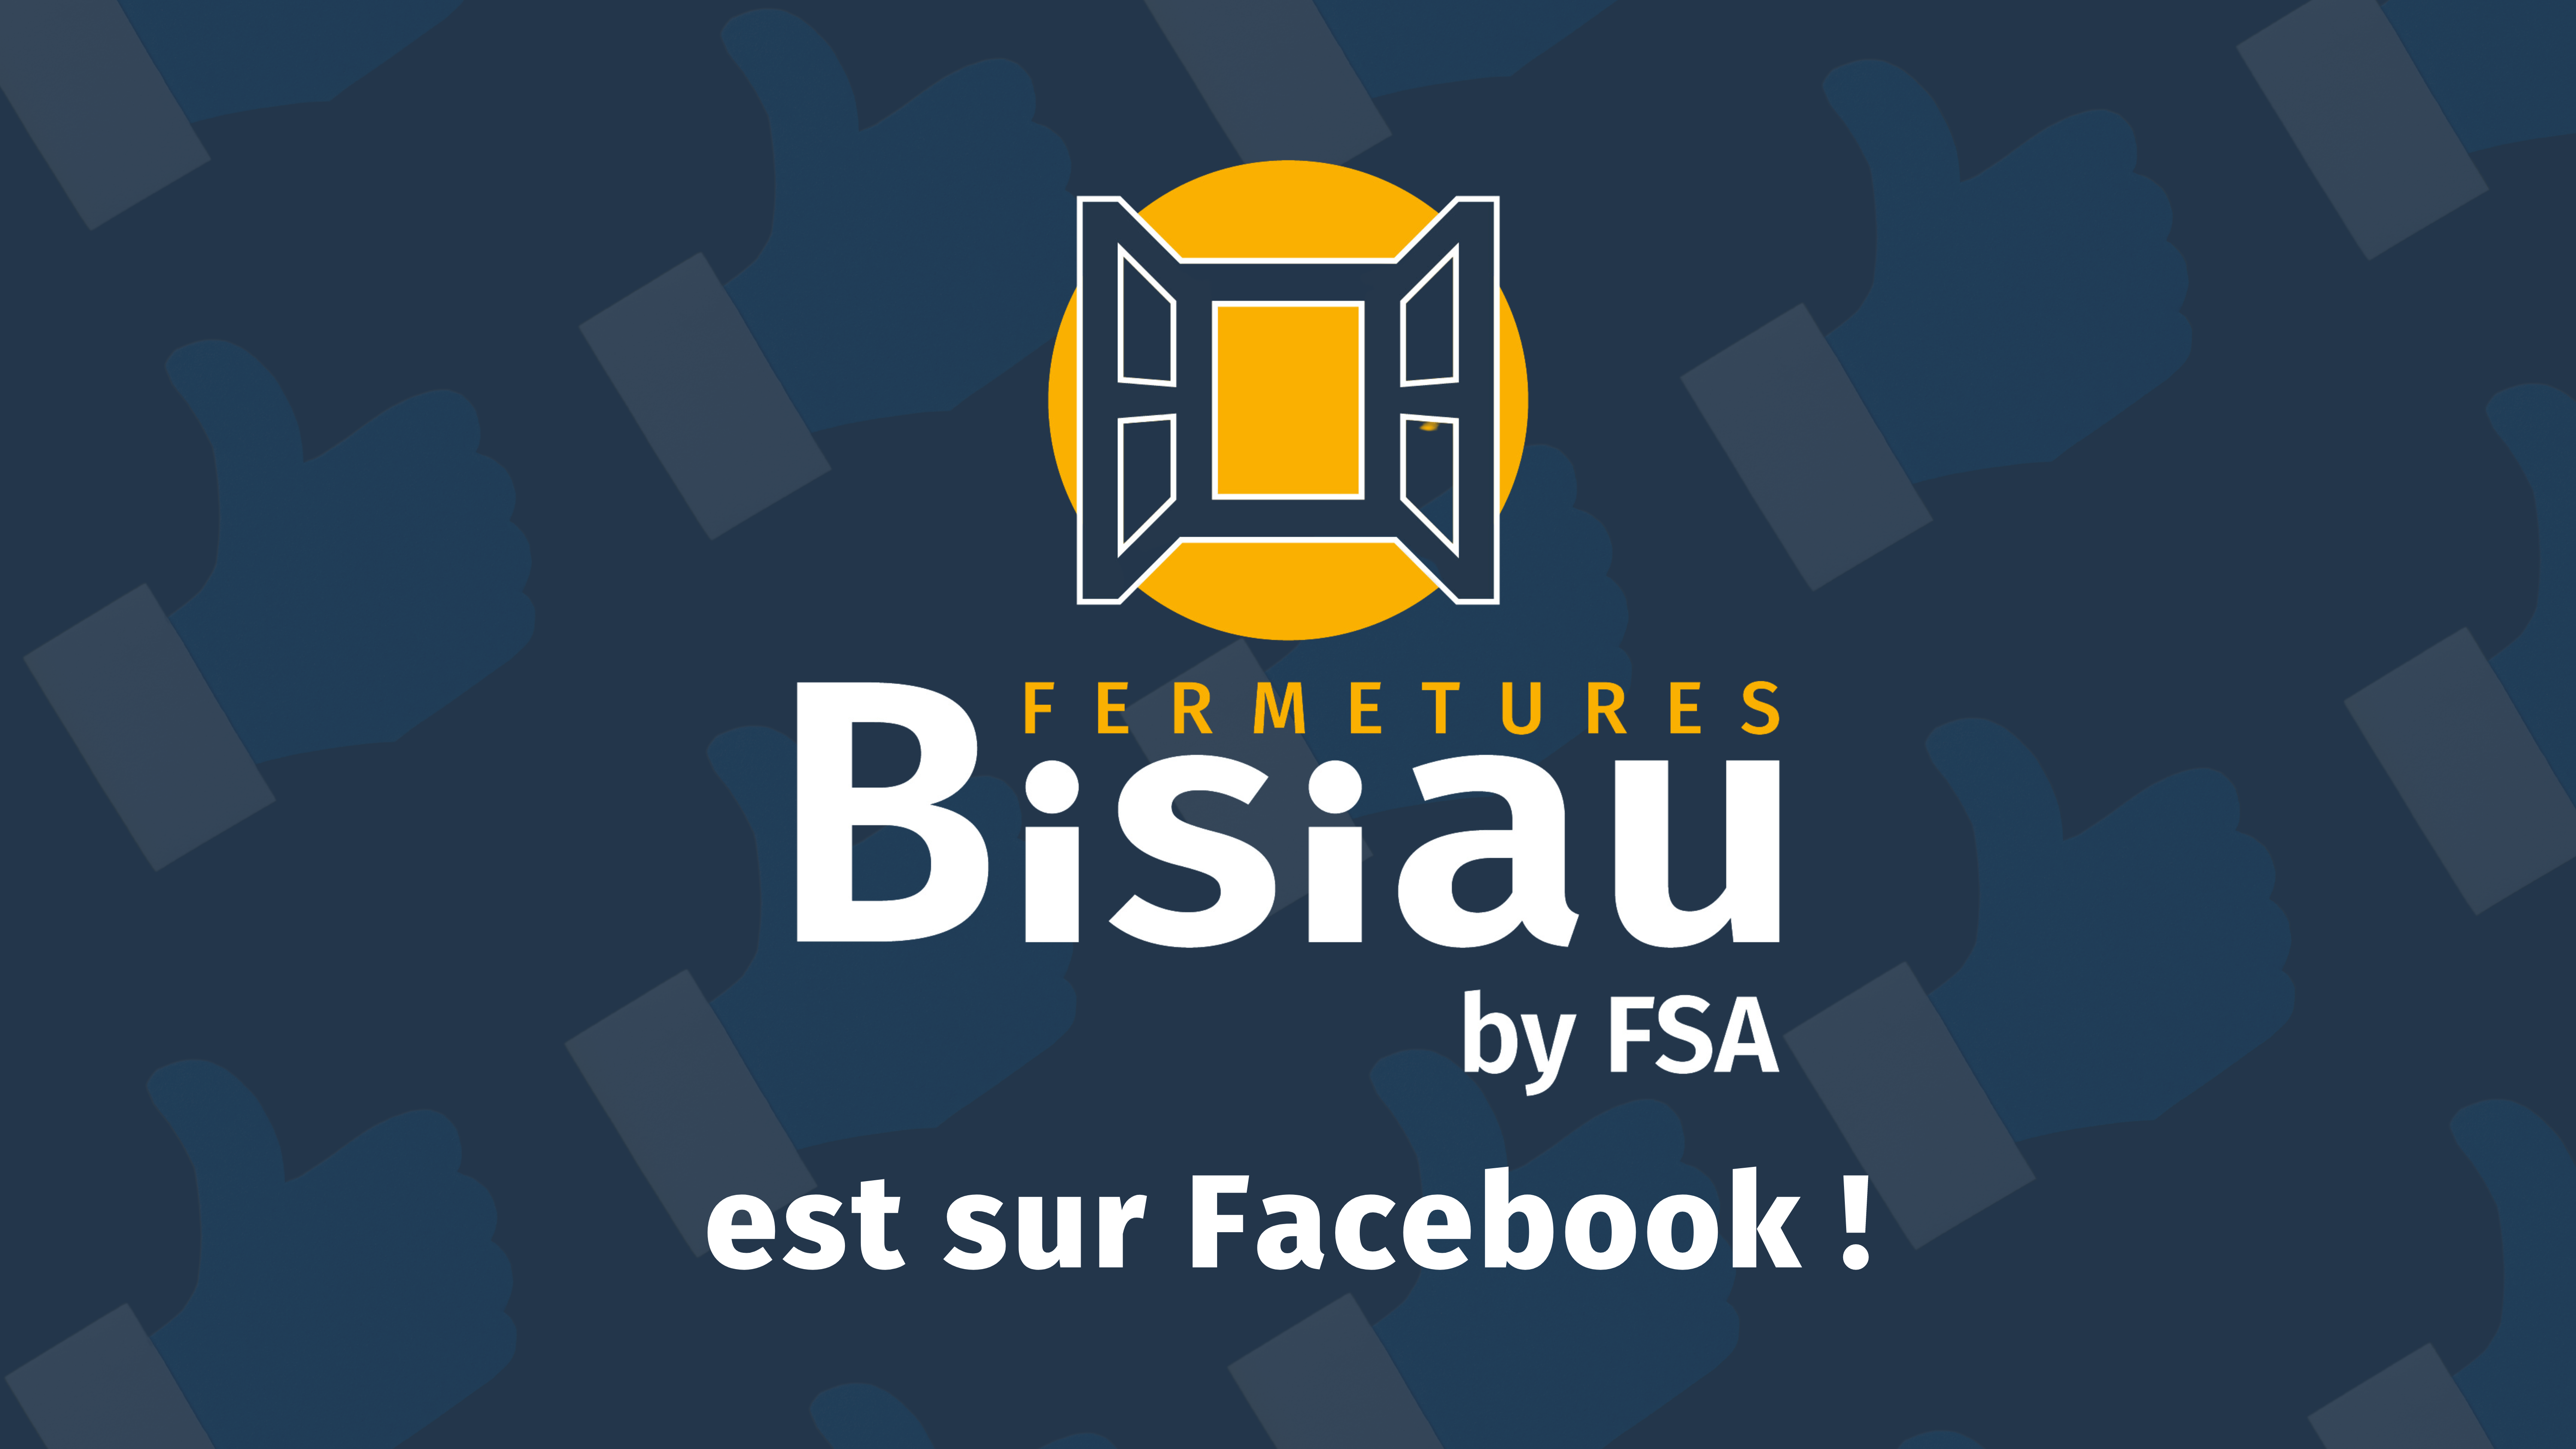 Arrivée sur facebook de Fermetures Bisiau by FSA